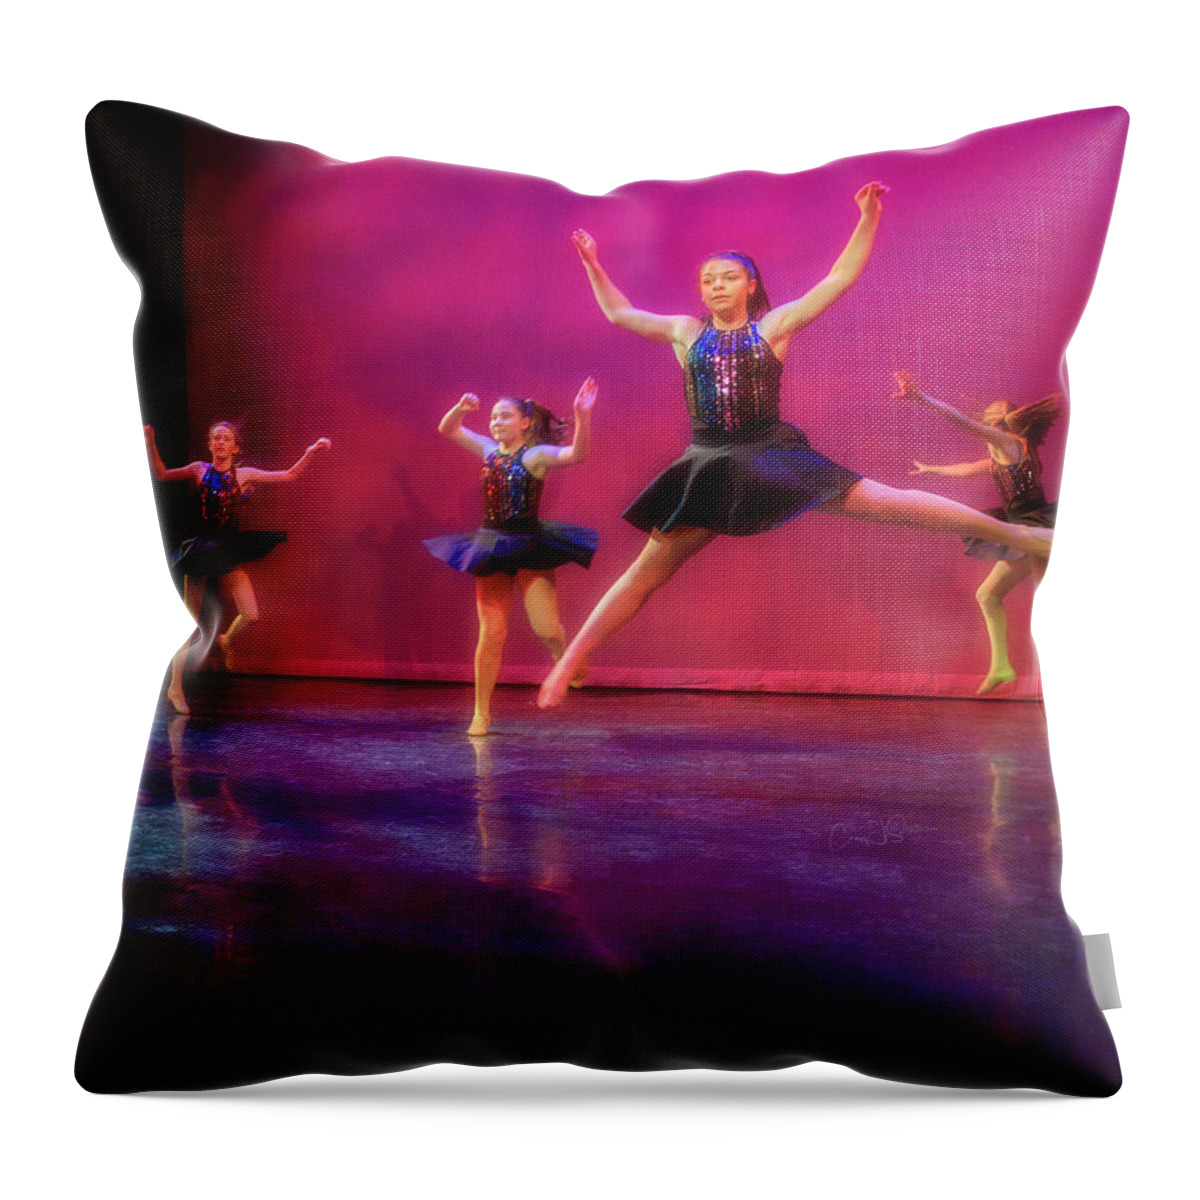 Modern Throw Pillow featuring the photograph Modern Dance by Craig J Satterlee